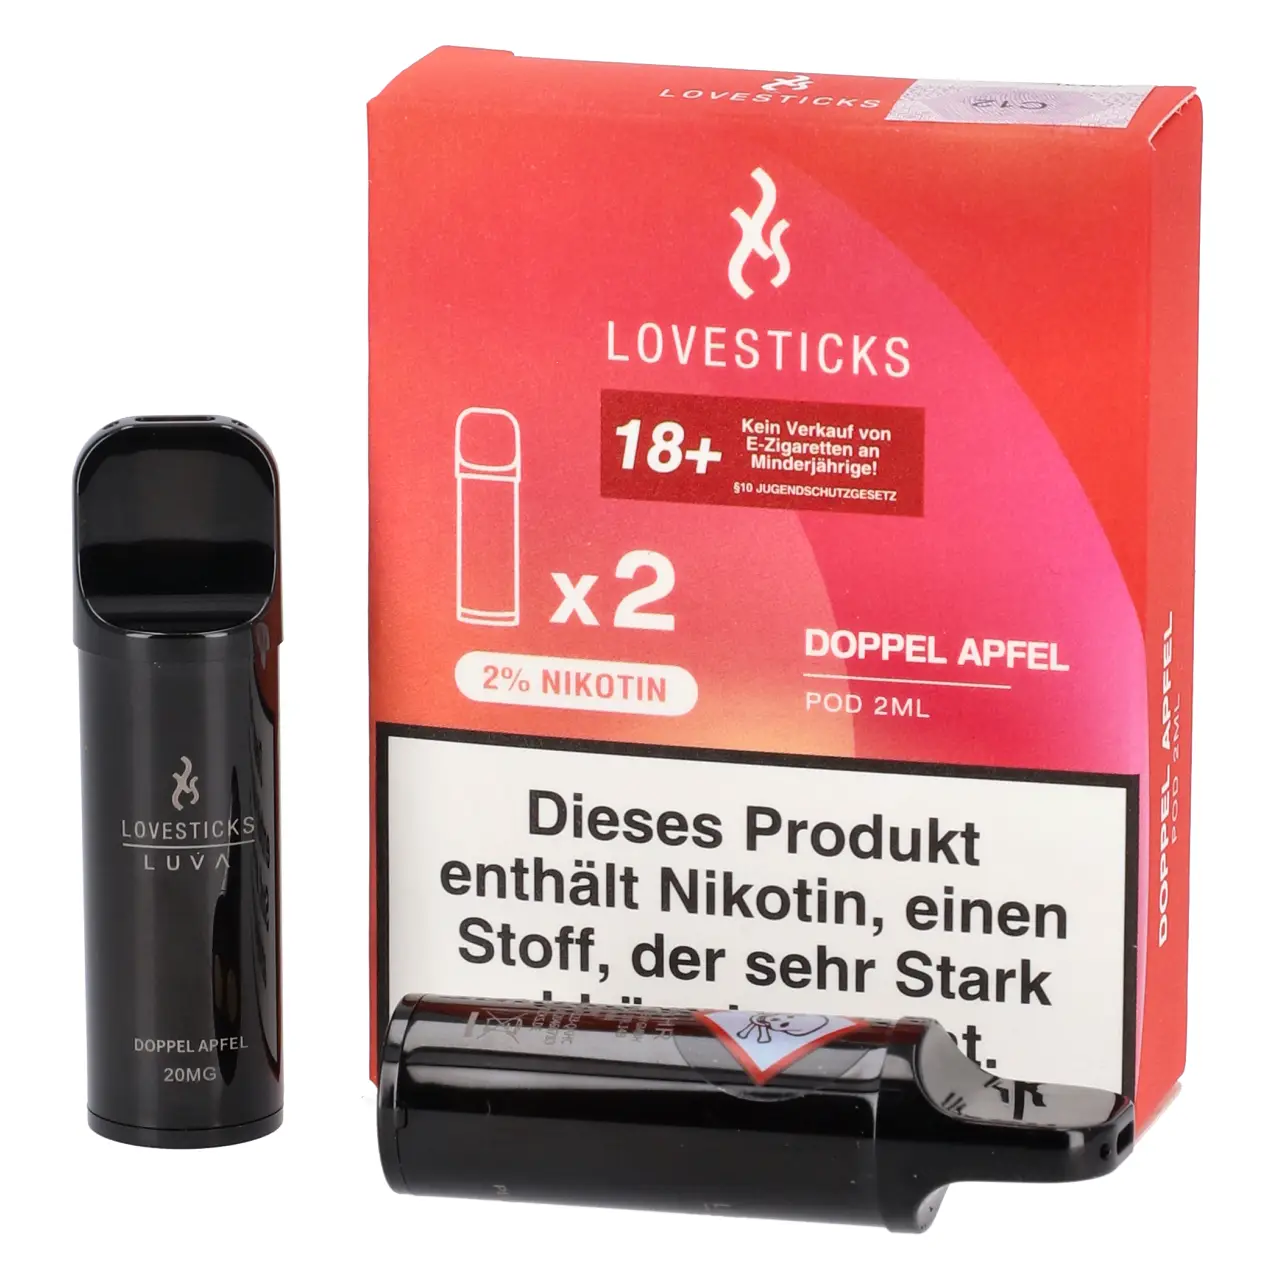 Doppel Apfel - Lovesticks Luva Prefilled Pod - 2er Packung